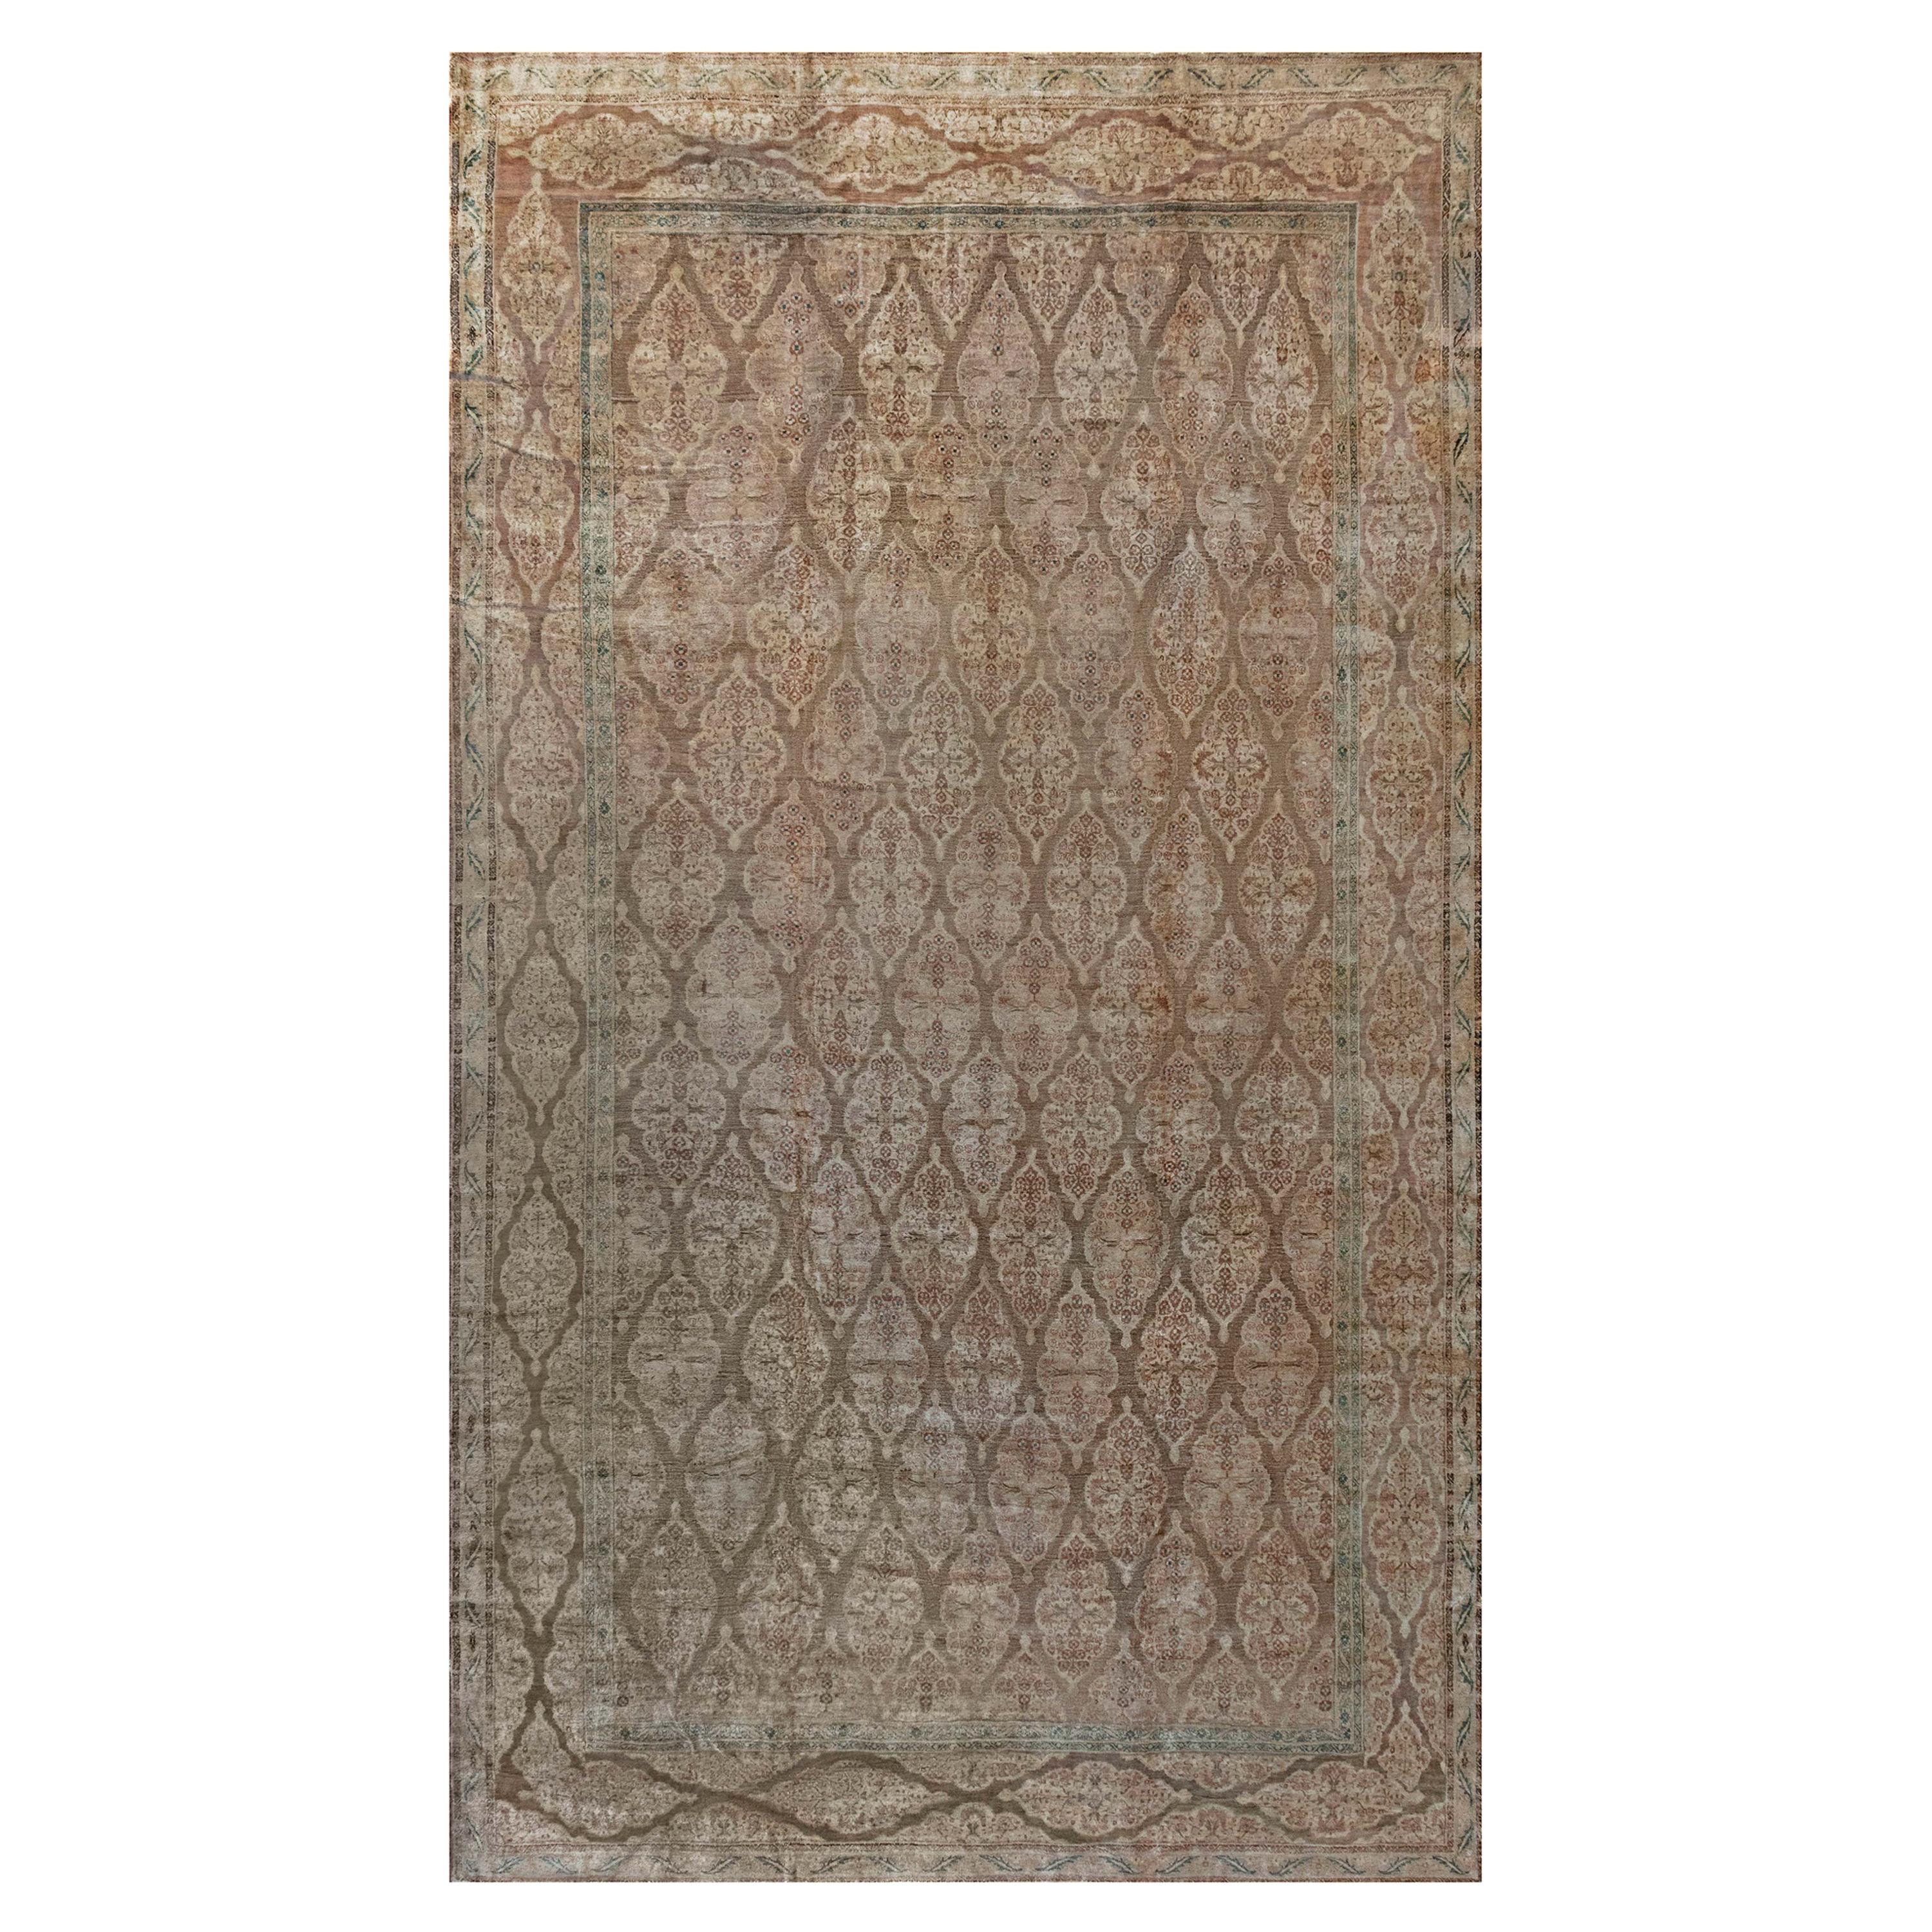 1900s Persian Tabriz Handmade Brown Wool Rug